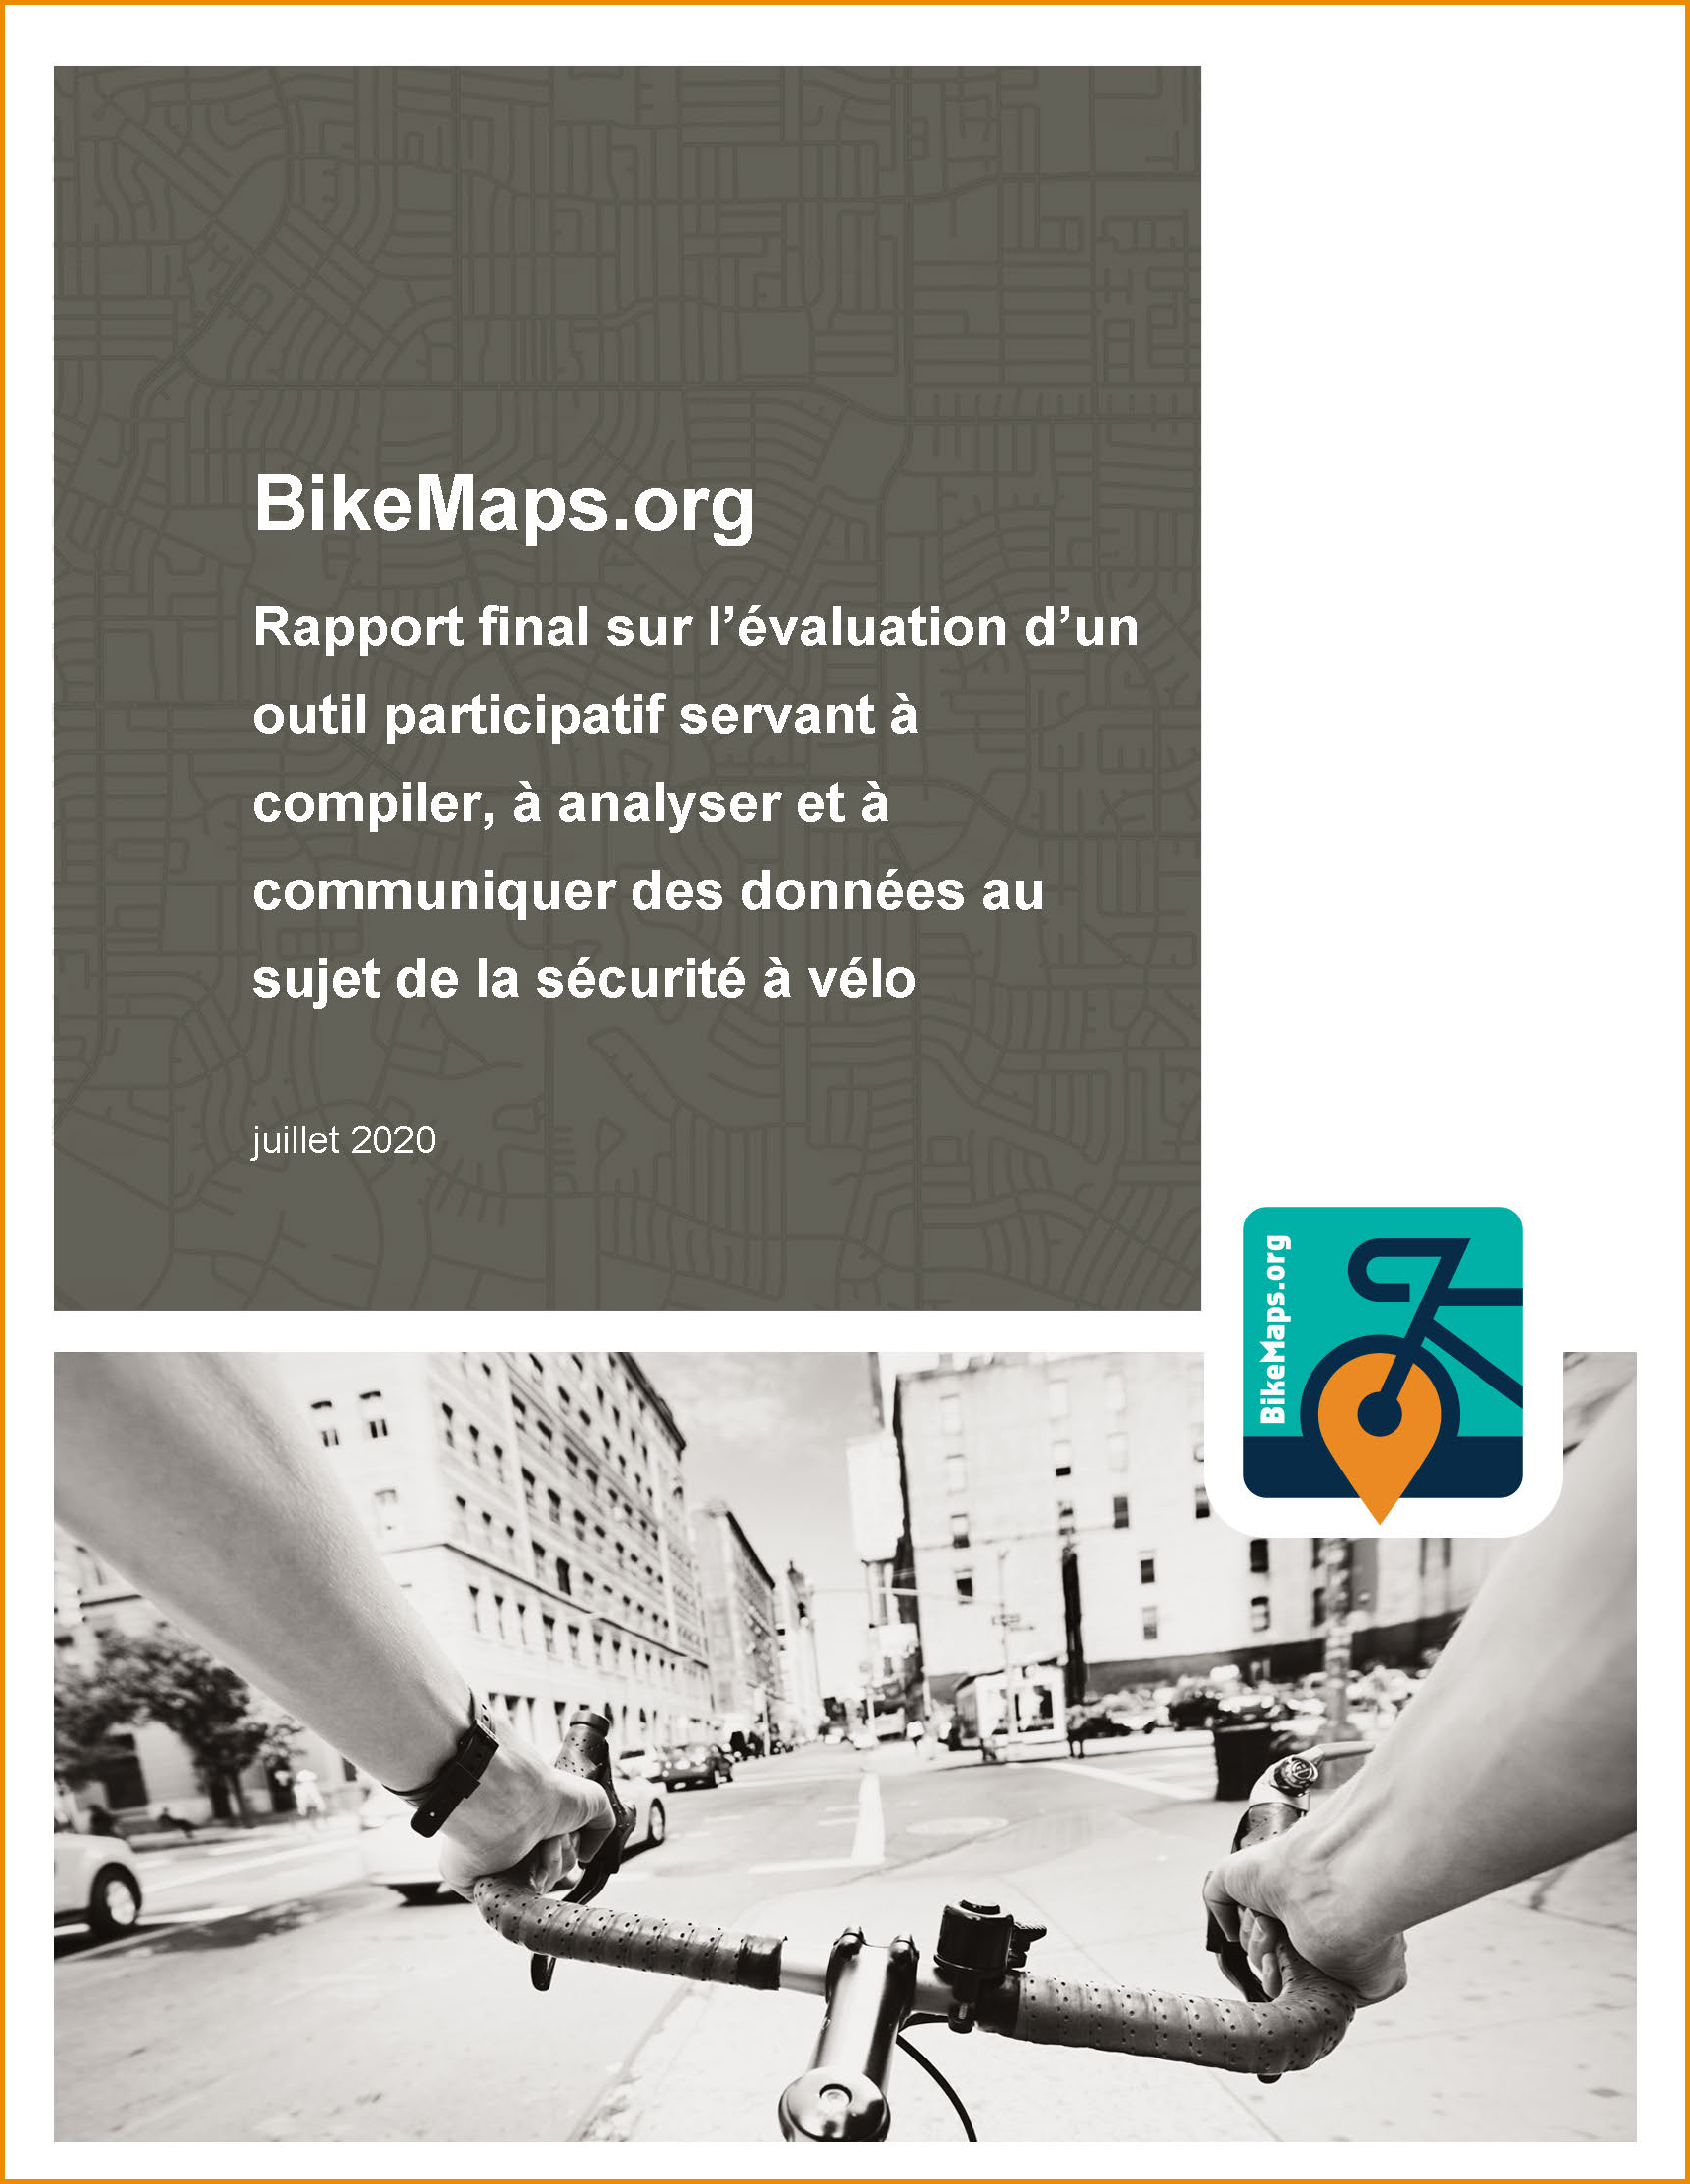  BikeMaps.org - Rapport final sur l’évaluation d’un outil participatif servant à compiler, à analyser et à communiquer des données au sujet de la sécurité à vélo